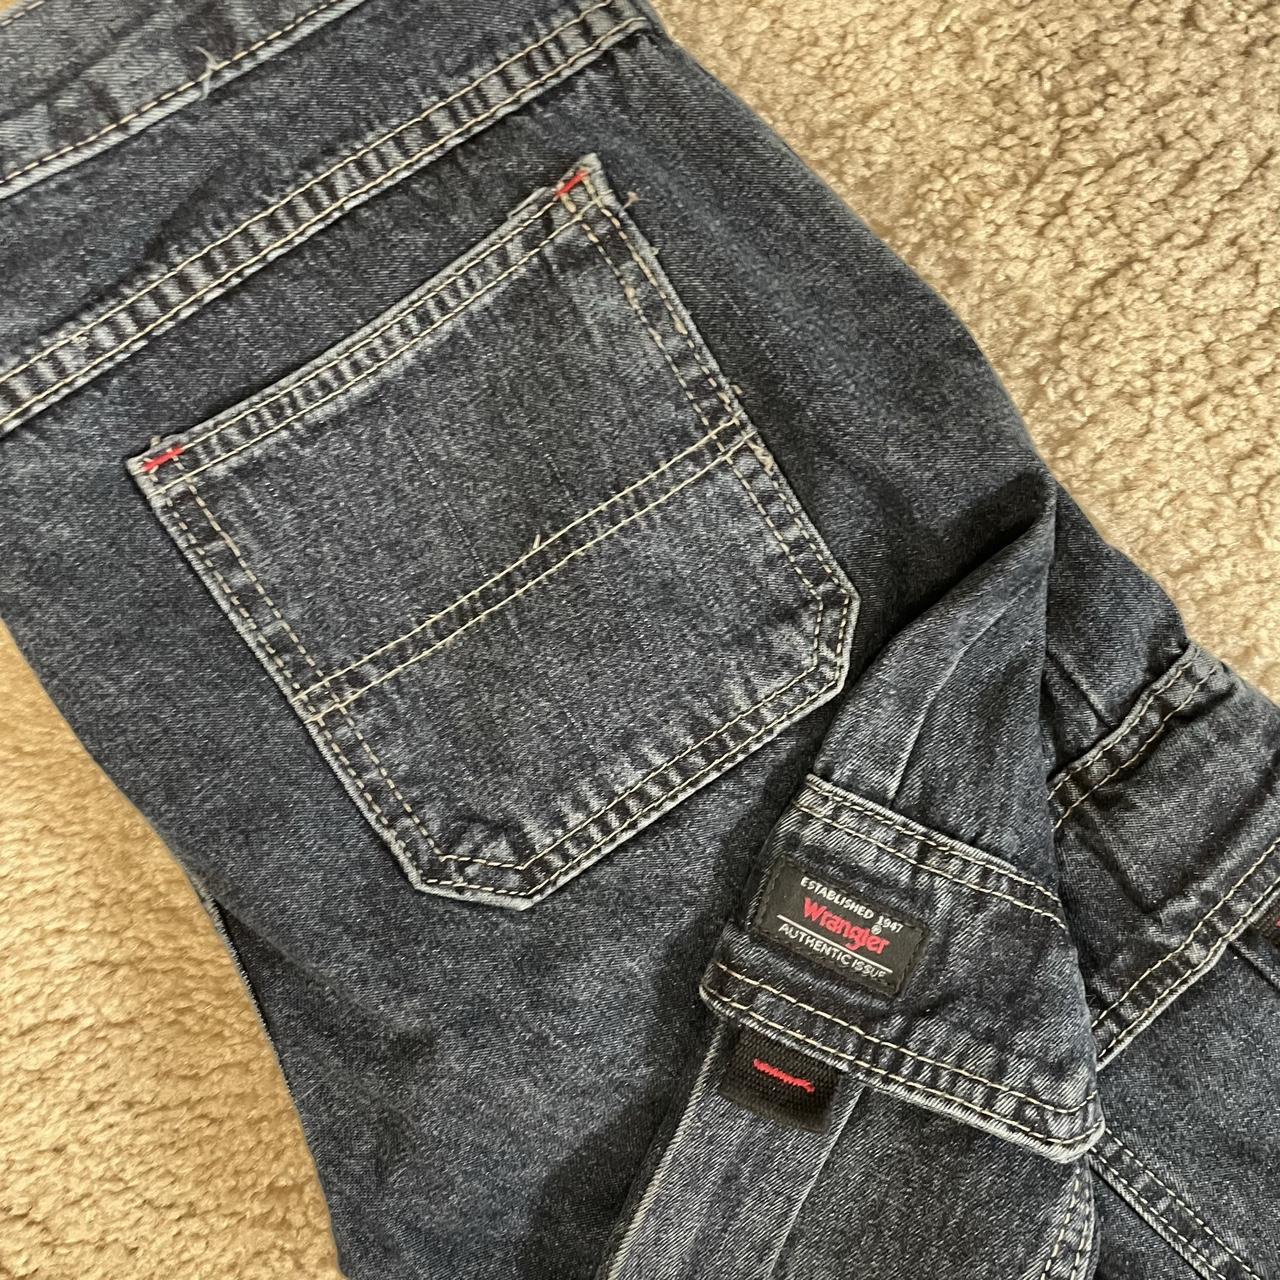 Awesome Wrangler cargo jeans/denim pants excellent... - Depop